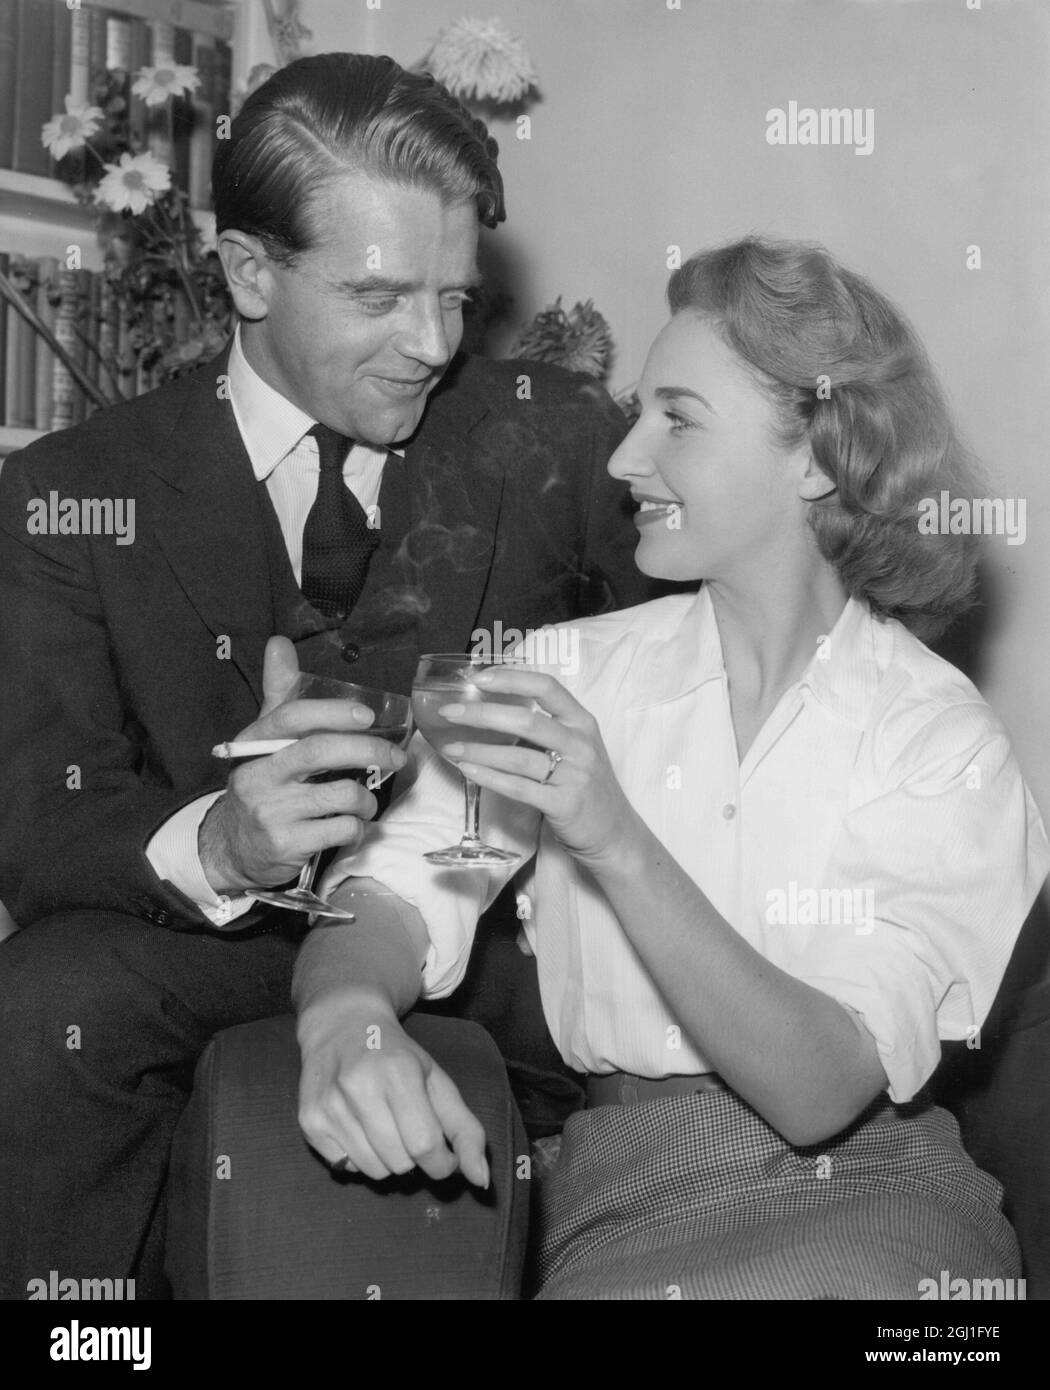 Chris Chataway, TV-Persönlichkeit und ehemaliger Olympiateilnehmer, klatschte mit seiner Verlobten, Miss Anna Lett in London, auf eine Brille. 30. Dezember 1958 Stockfoto